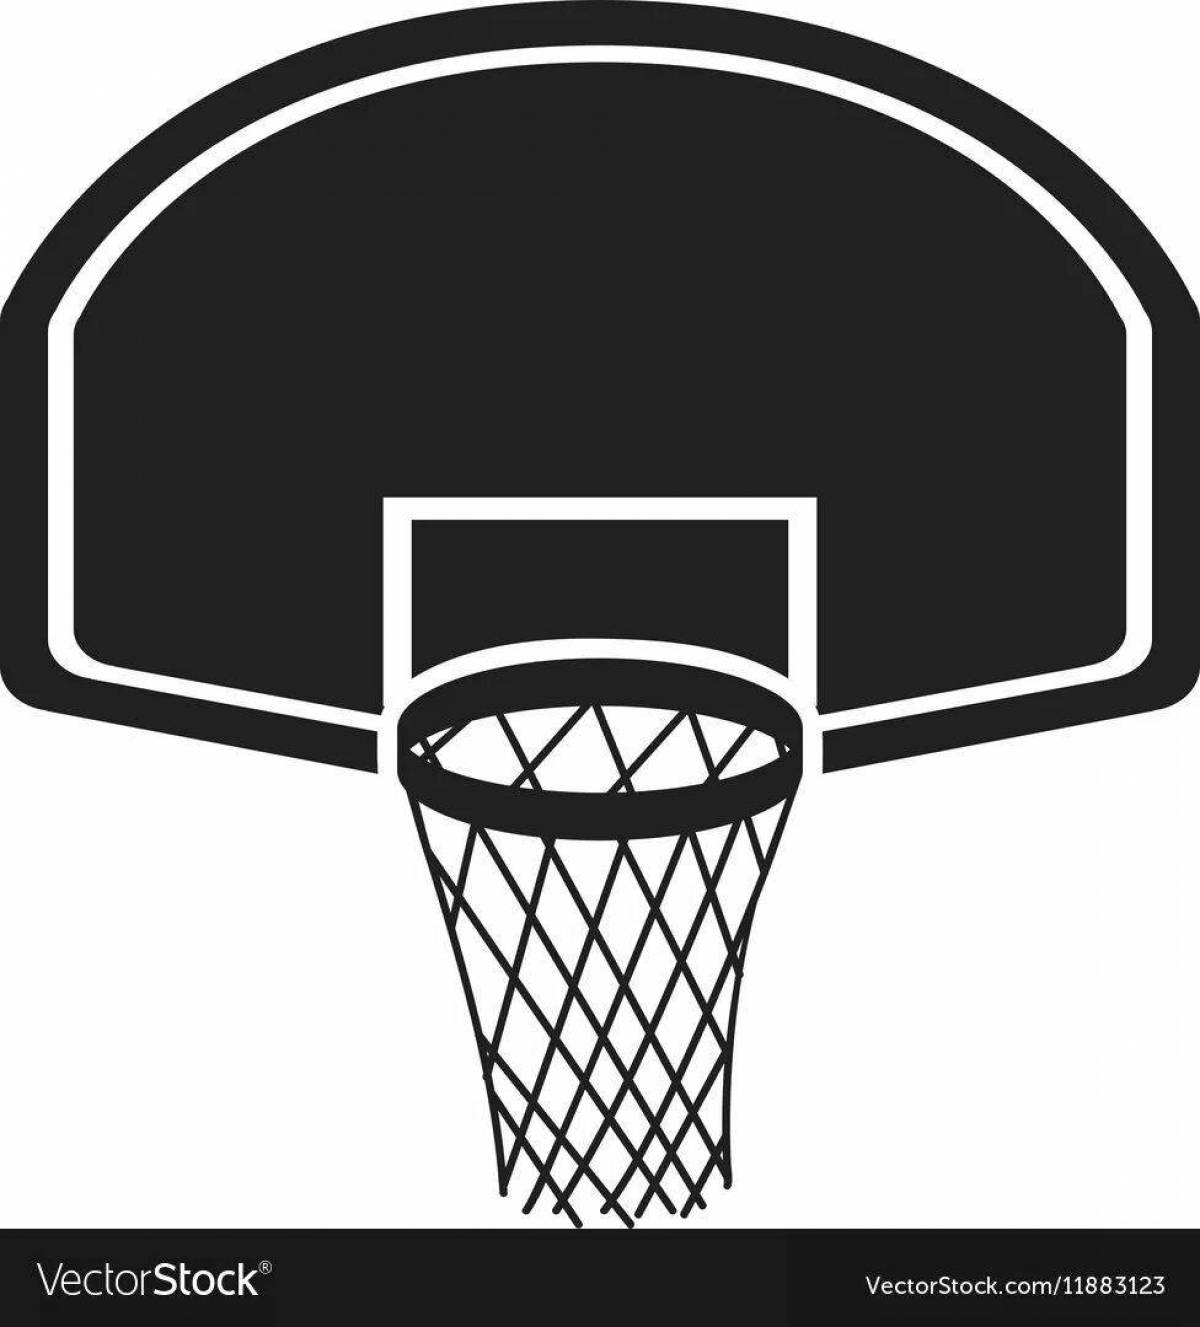 Coloring page elegant basketball hoop